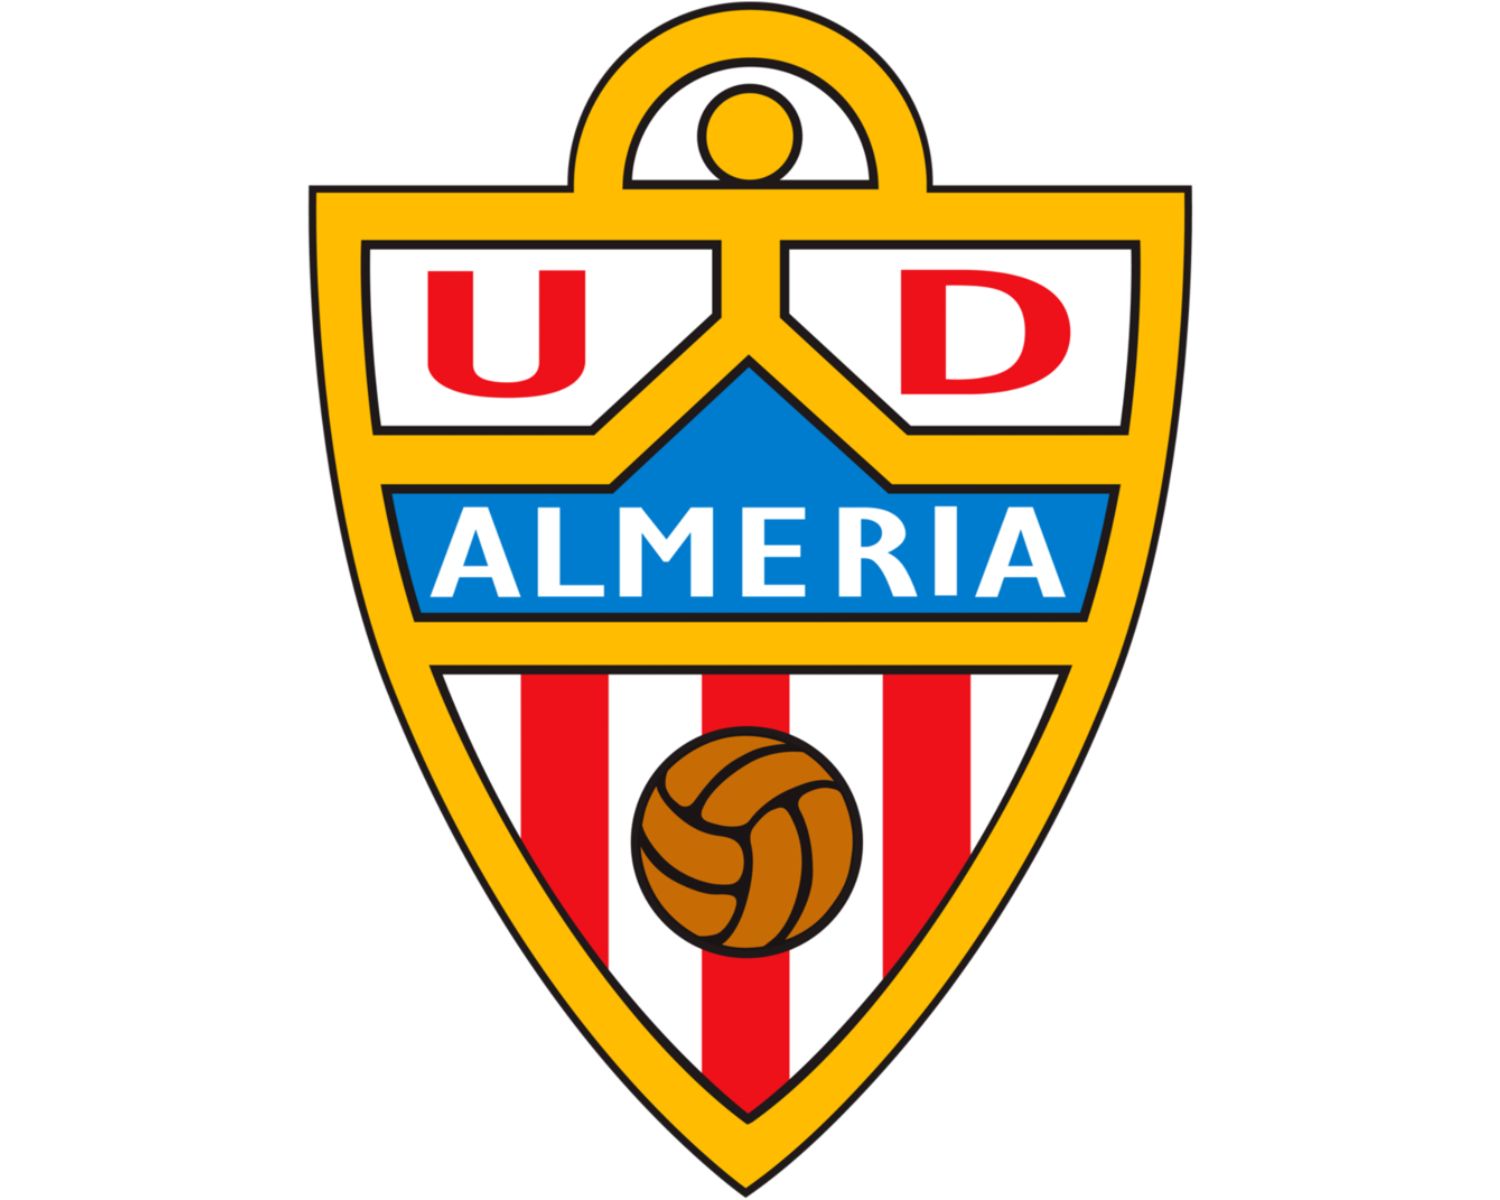 ud-almeria-18-football-club-facts